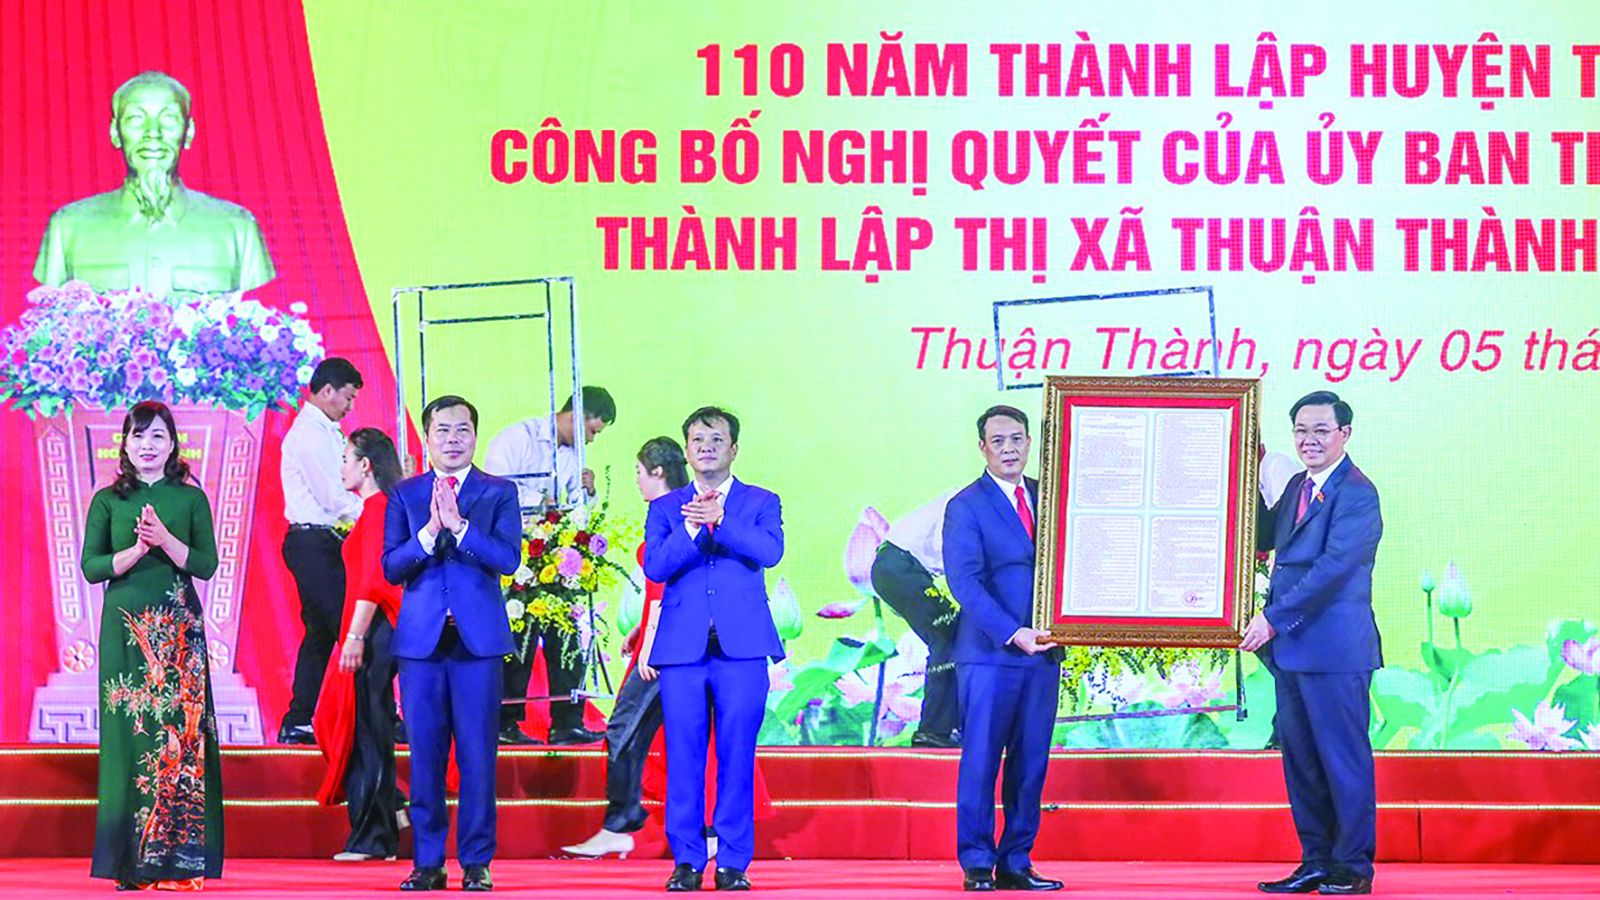  Chủ tịch Quốc hội Vương Đình Huệ trao tặng ảnh Bác Hồ và Nghị quyết của UBTVp/Quốc hội cho Đảng bộ, chính quyền Thuận Thành về việc thành lập thị xã và các phường thuộc TX. Thuận Thành.